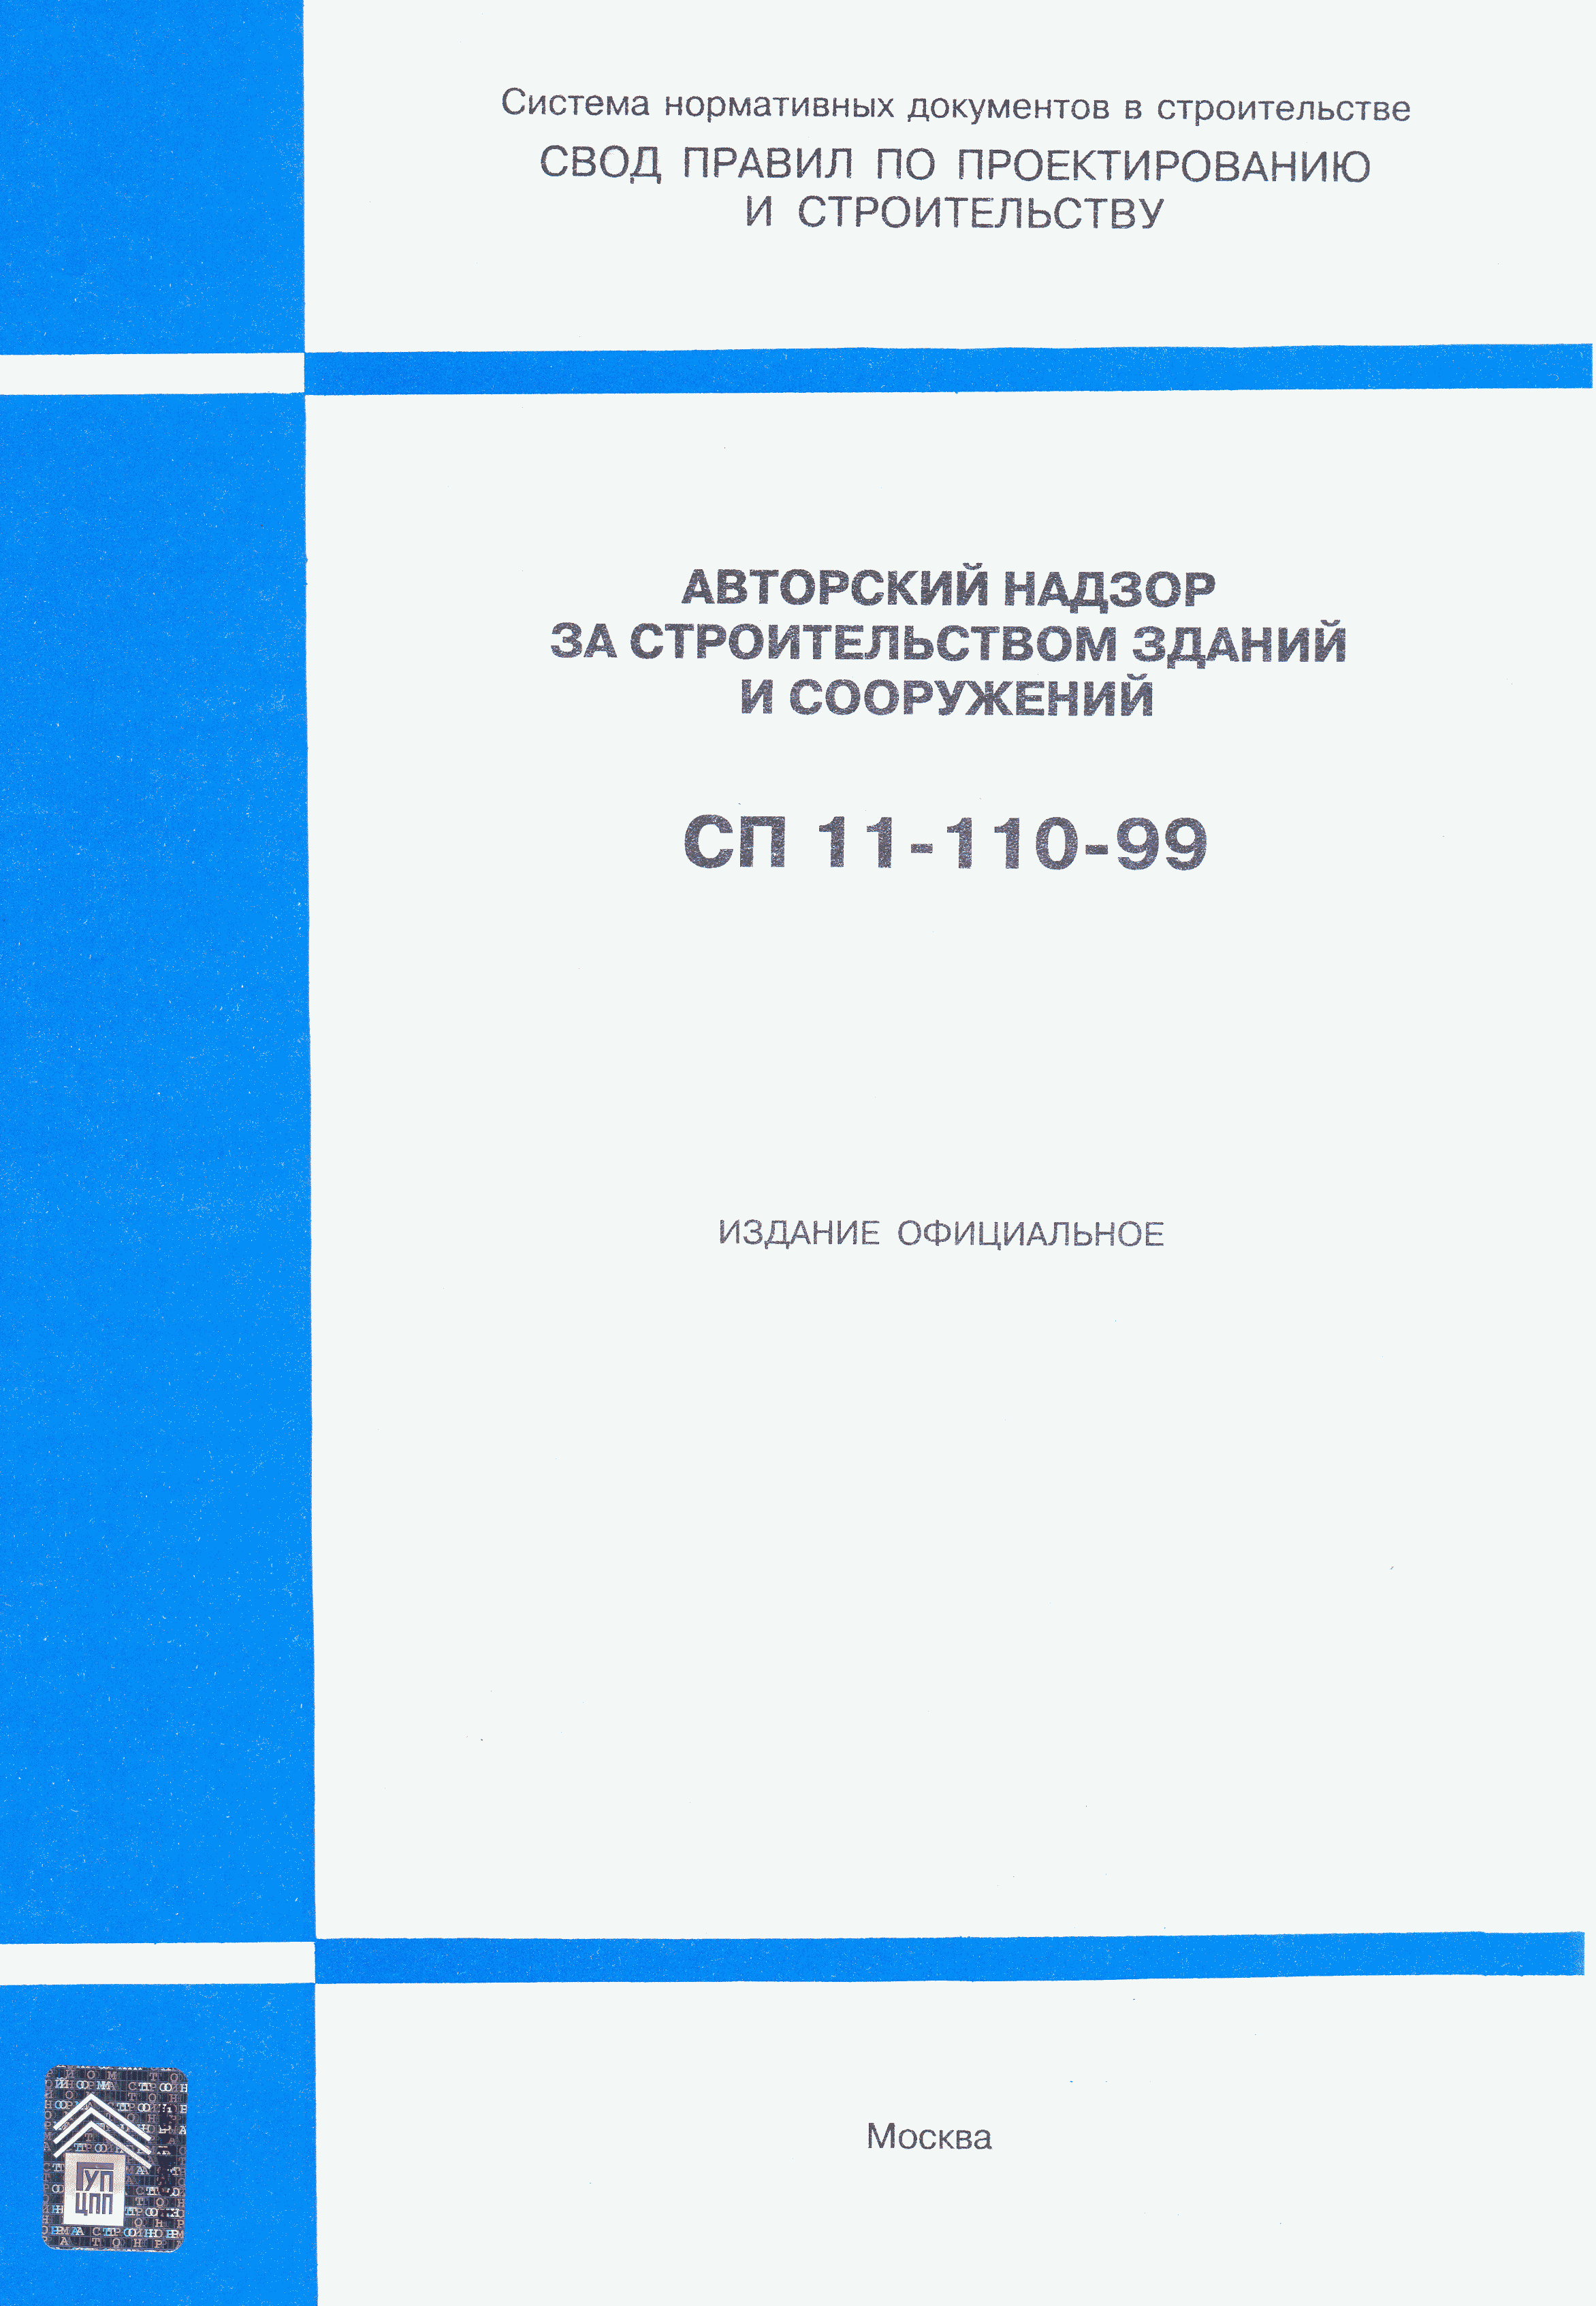 СП 11-110-99